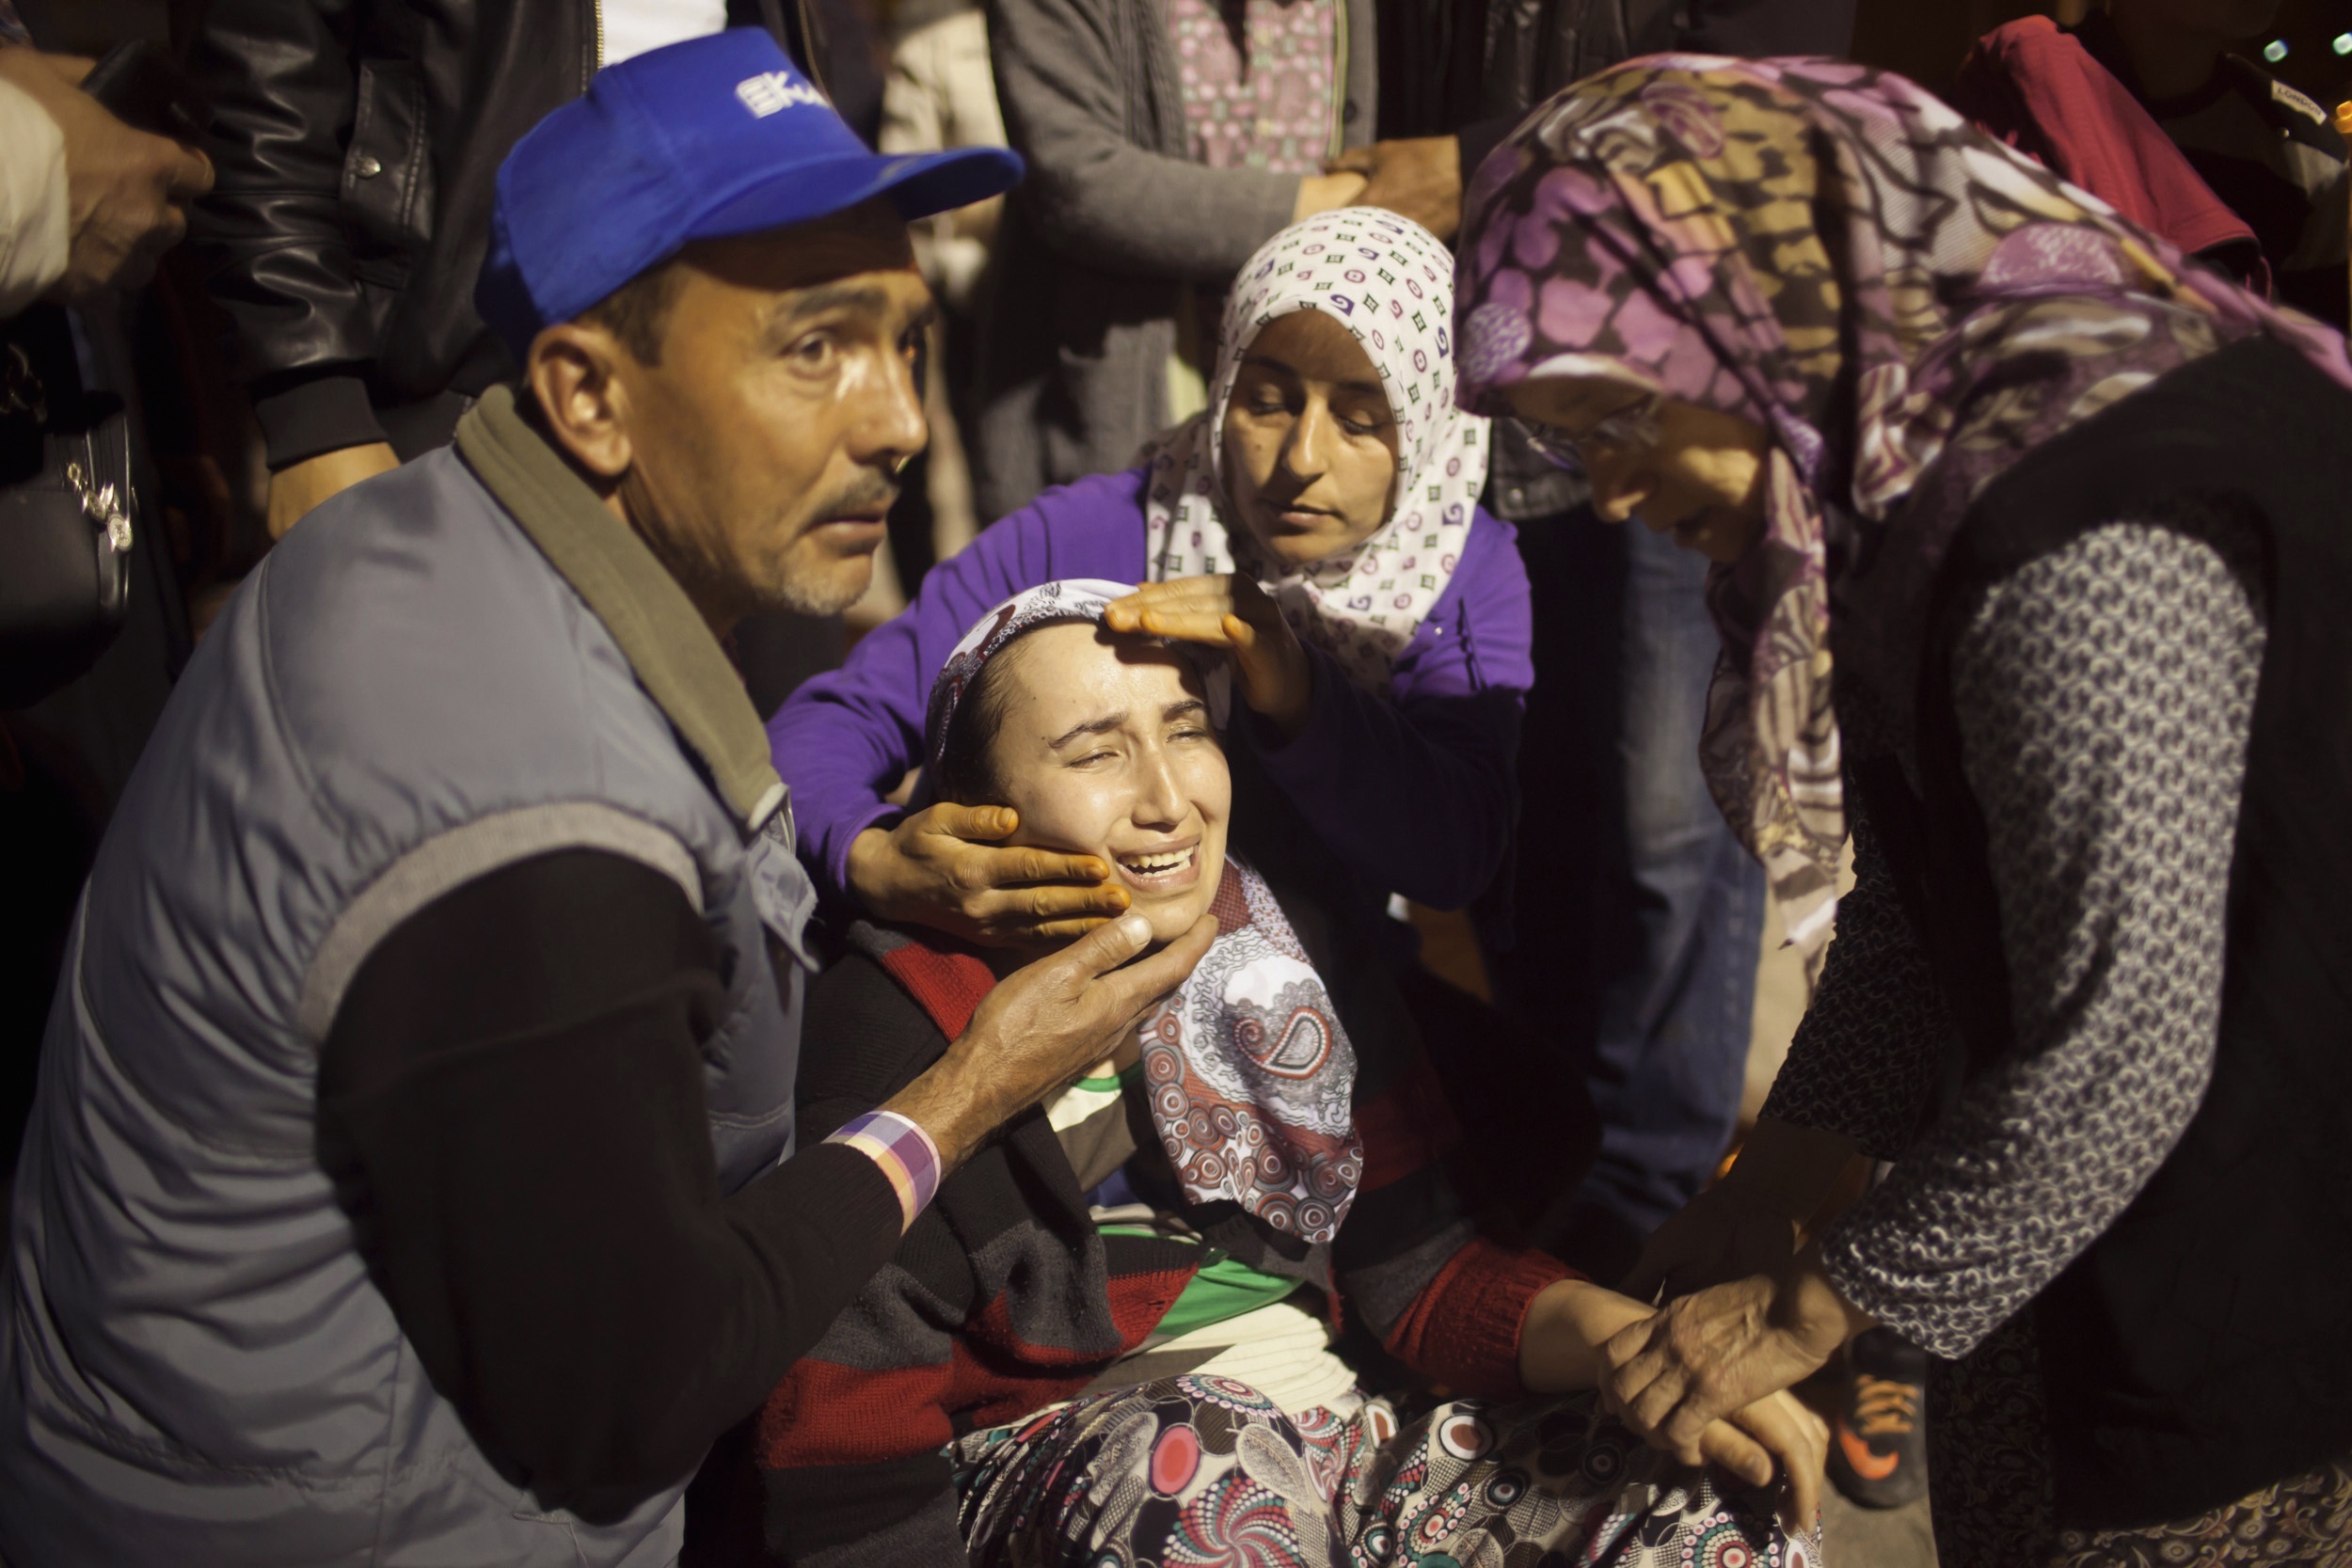 Φόβοι για 350 νεκρούς στο ορυχείο του θανάτου στην Τουρκία – Εκατοντάδες οι εγκλωβισμένοι, σβήνουν οι ελπίδες – Παιδιά ανάμεσα στους νεκρούς